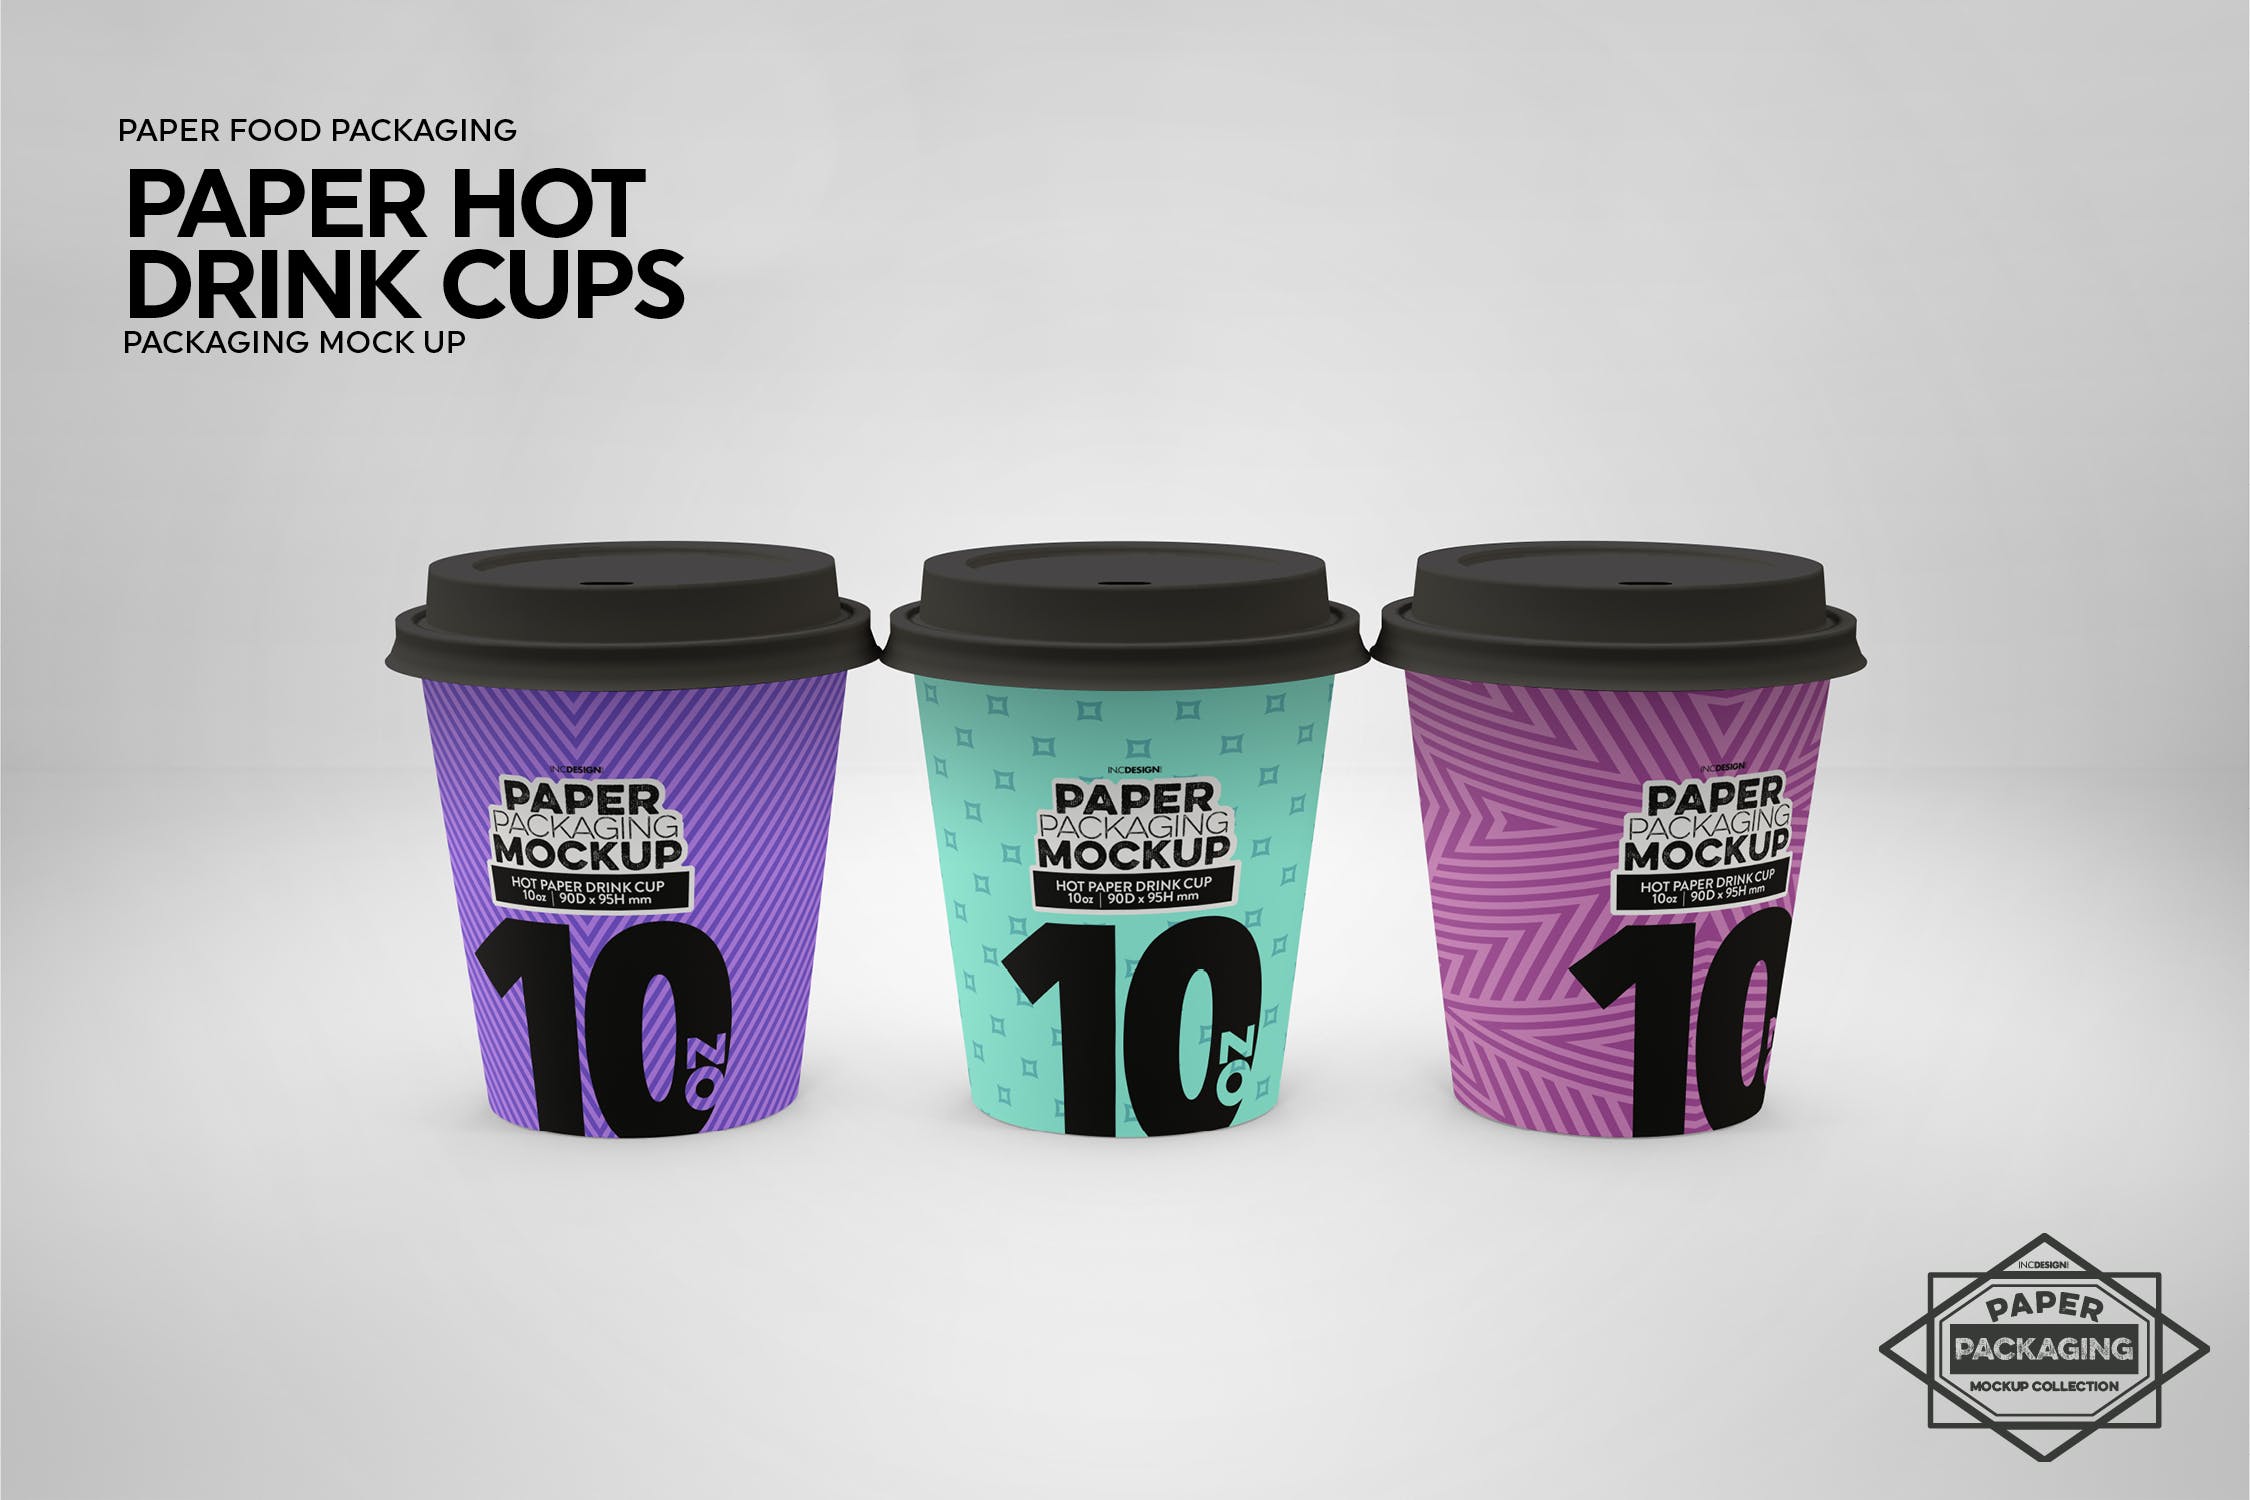 热饮一次性纸杯外观设计蚂蚁素材精选 Paper Hot Drink Cups Packaging Mockup插图(12)